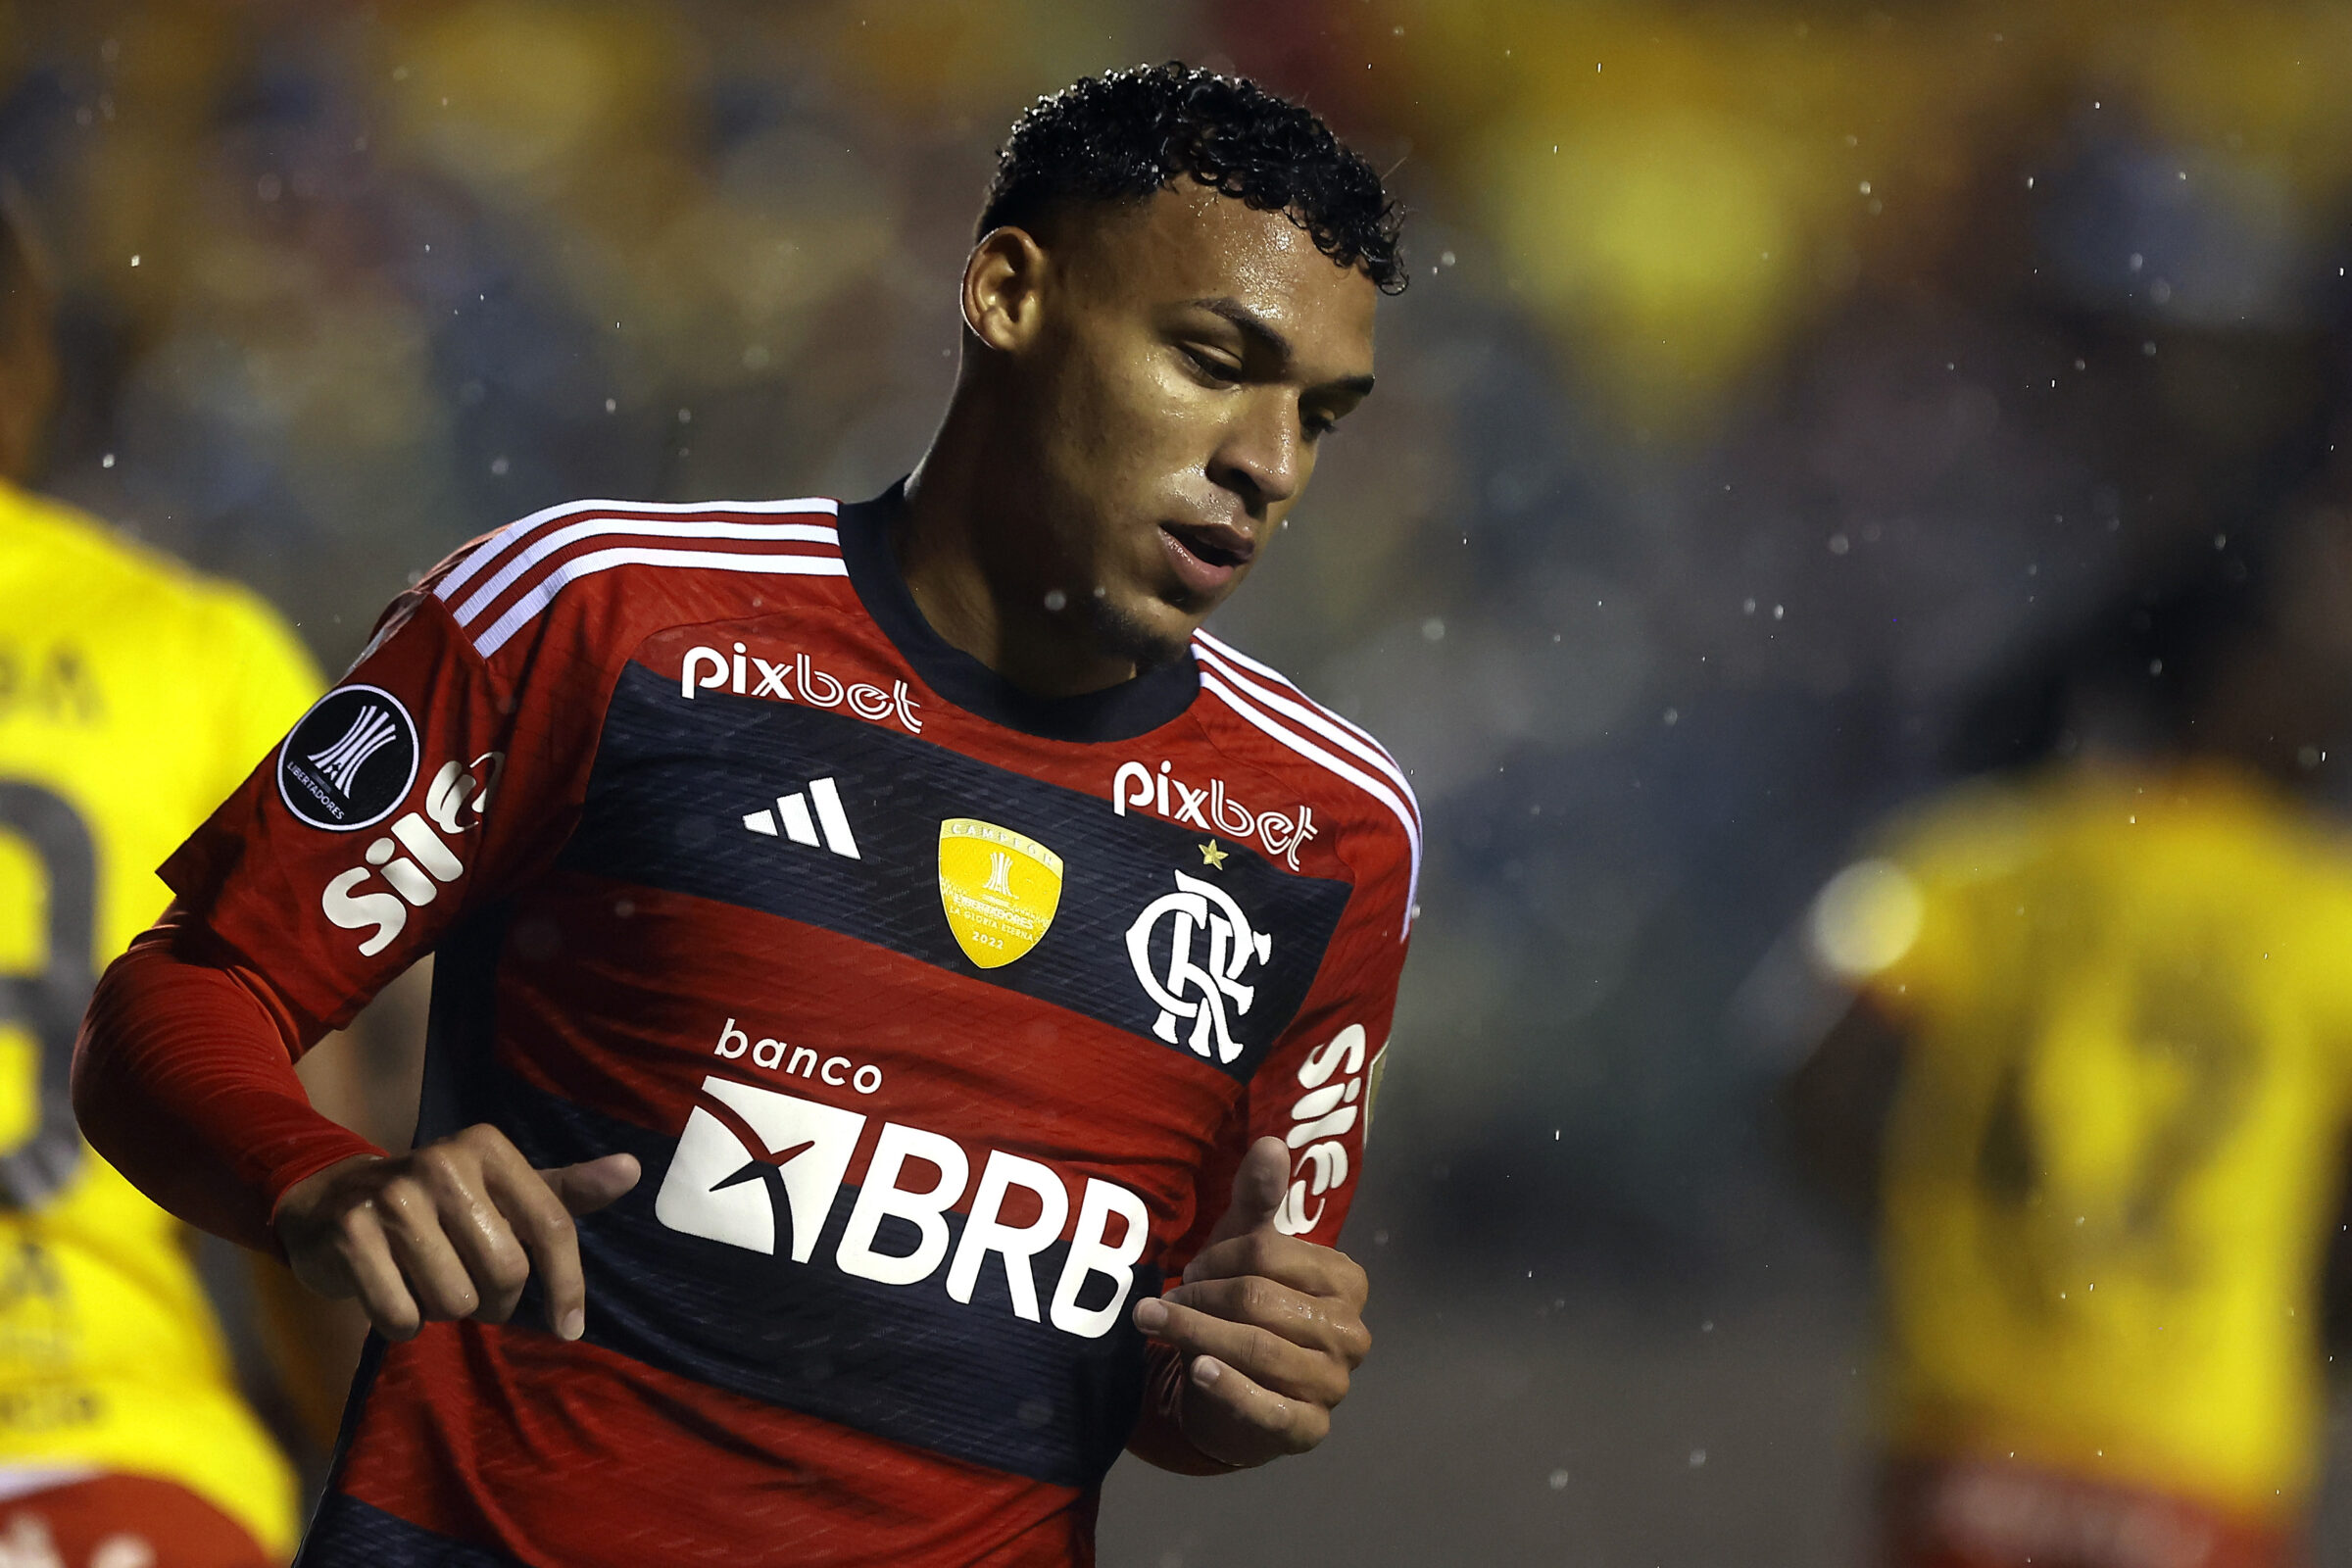 Palmeiras x Flamengo, duelo de gigantes pela Glória Eterna - CONMEBOL